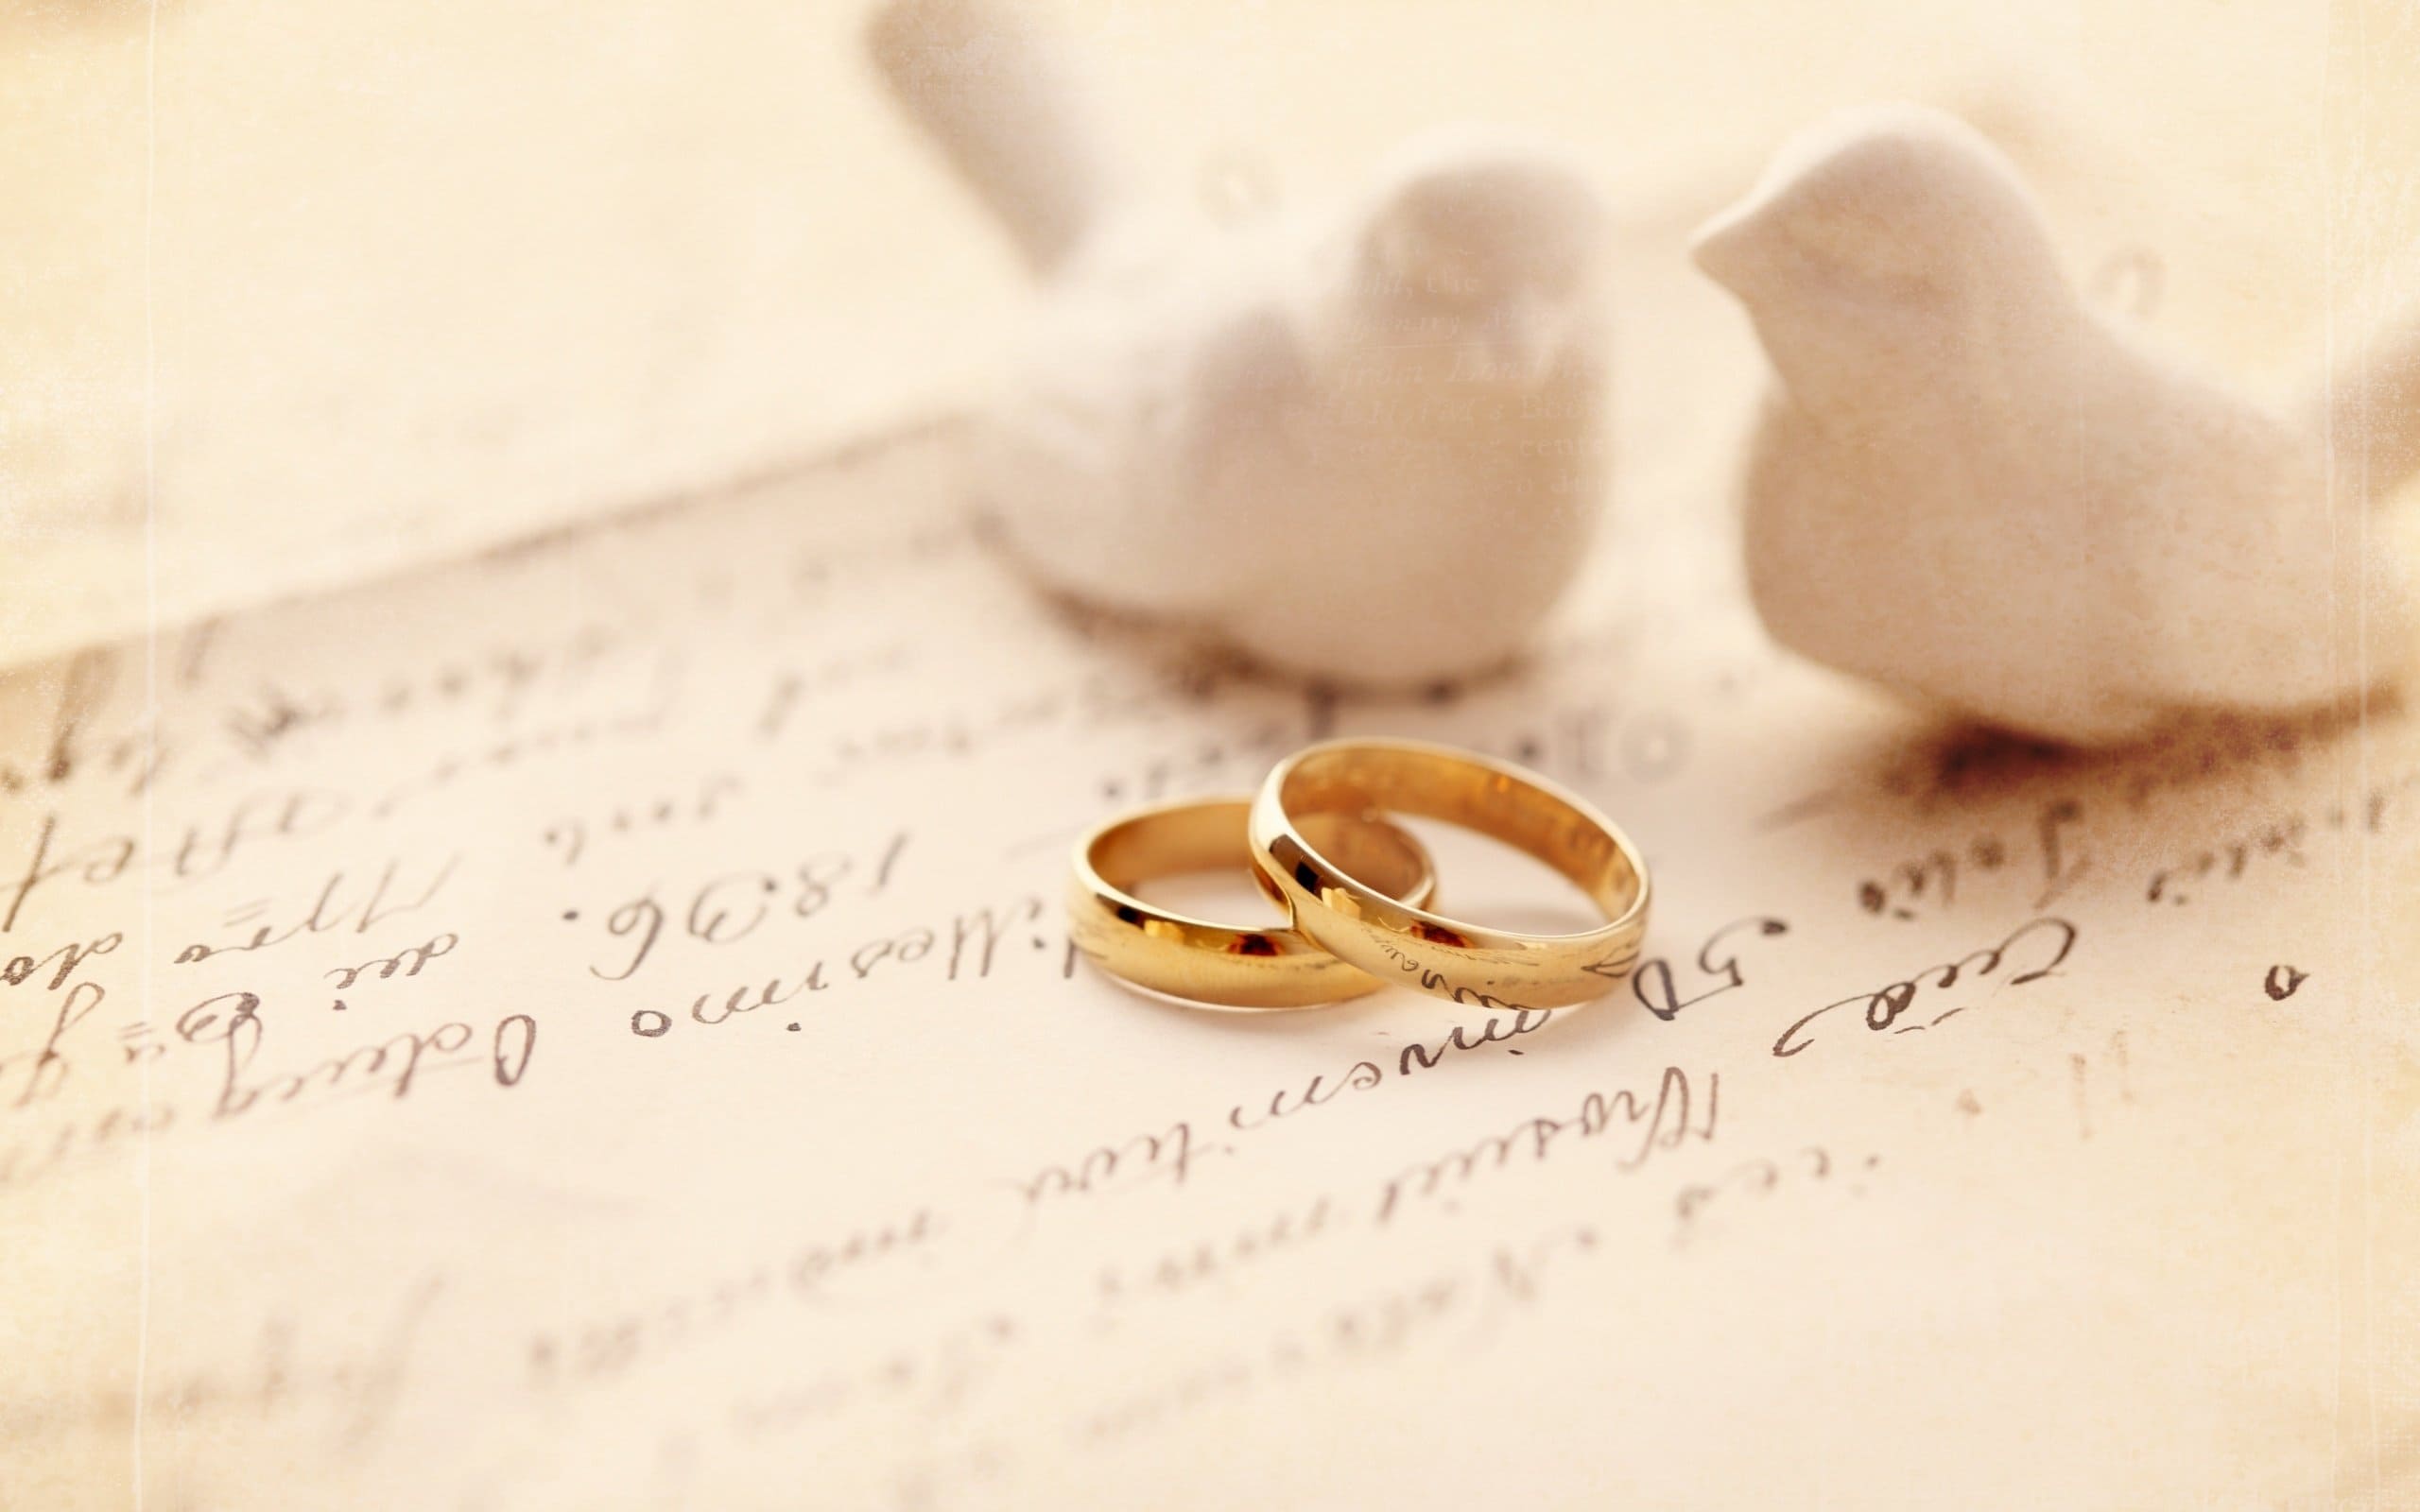 Ситцевая свадьба — сколько лет брака?